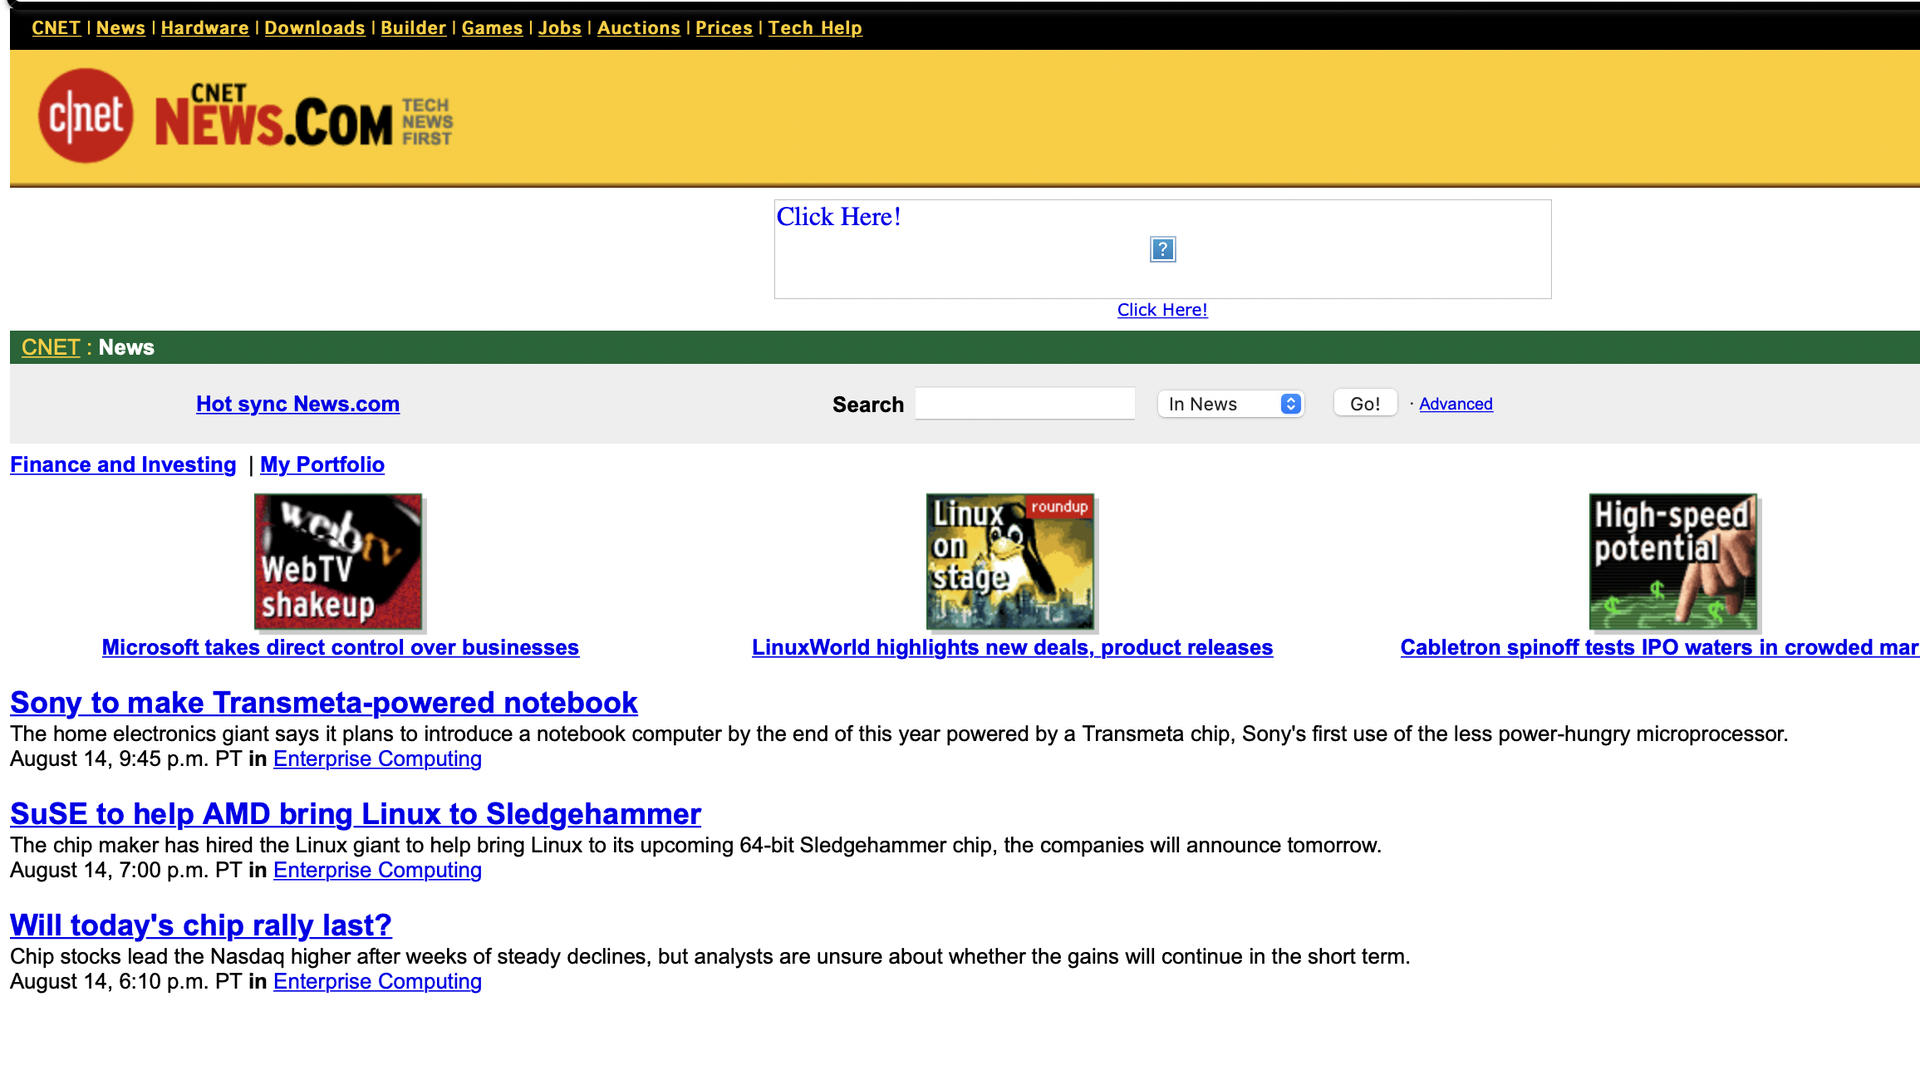 A screenshot of CNET News.com circa 2000